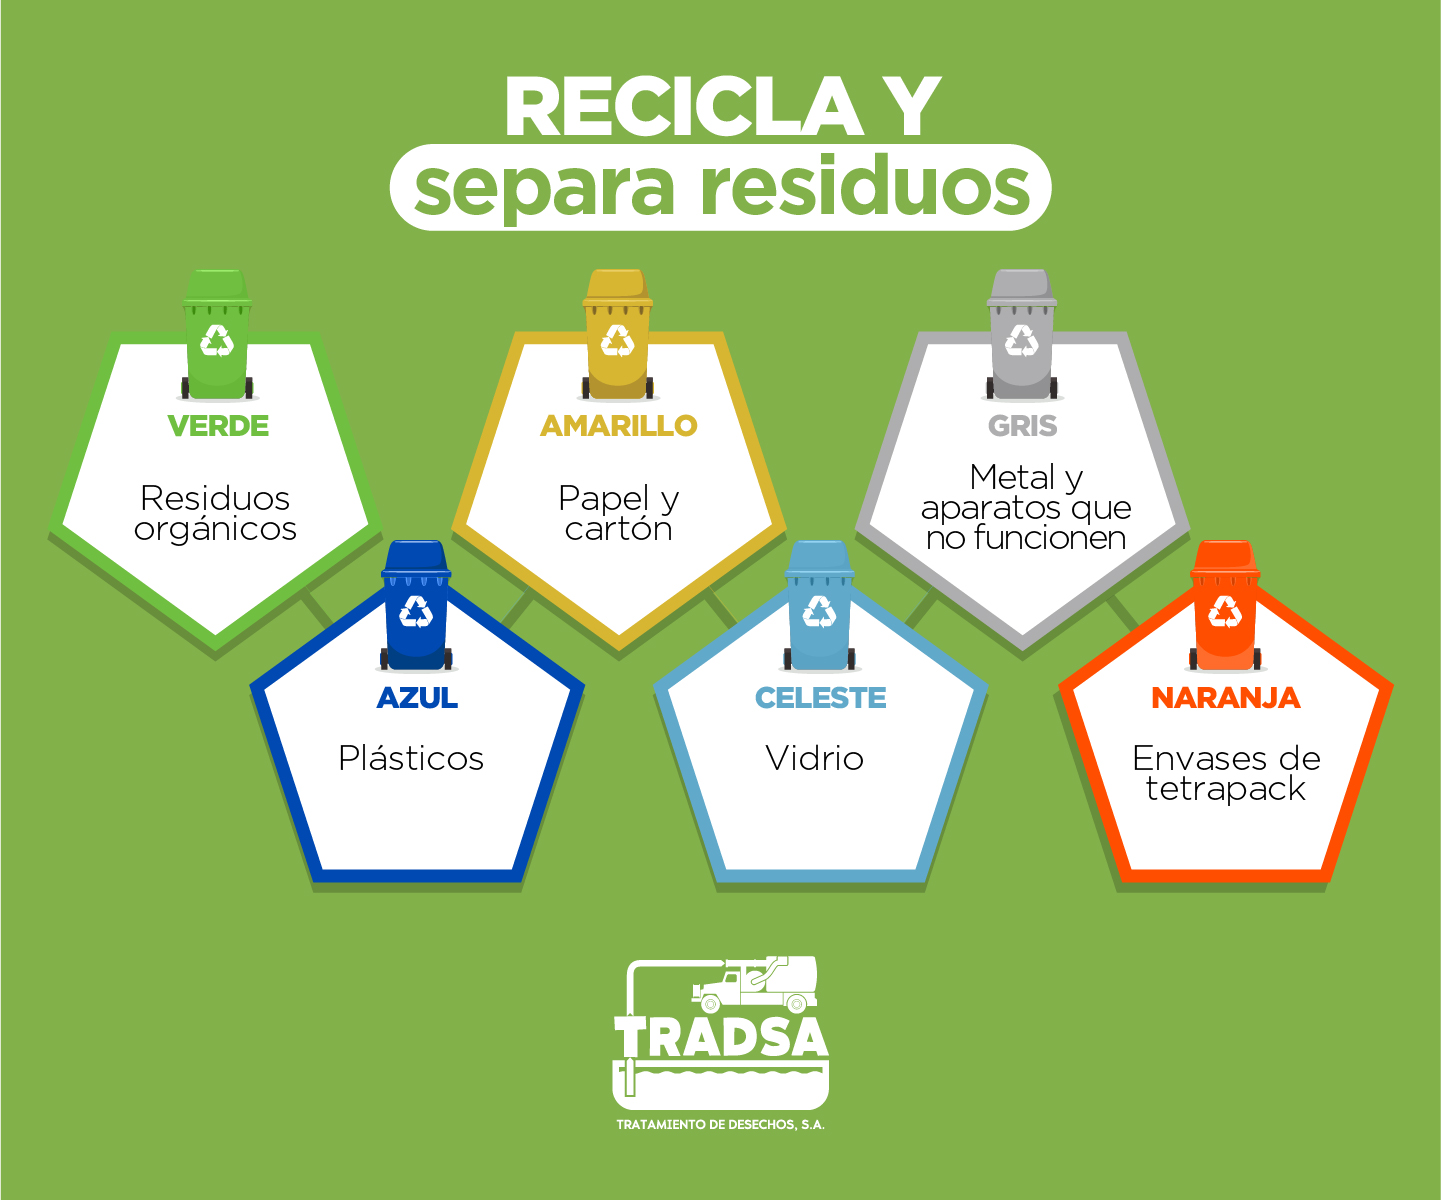 Cómo reciclar? - Guía completa de reciclaje - Algohayquehacer 